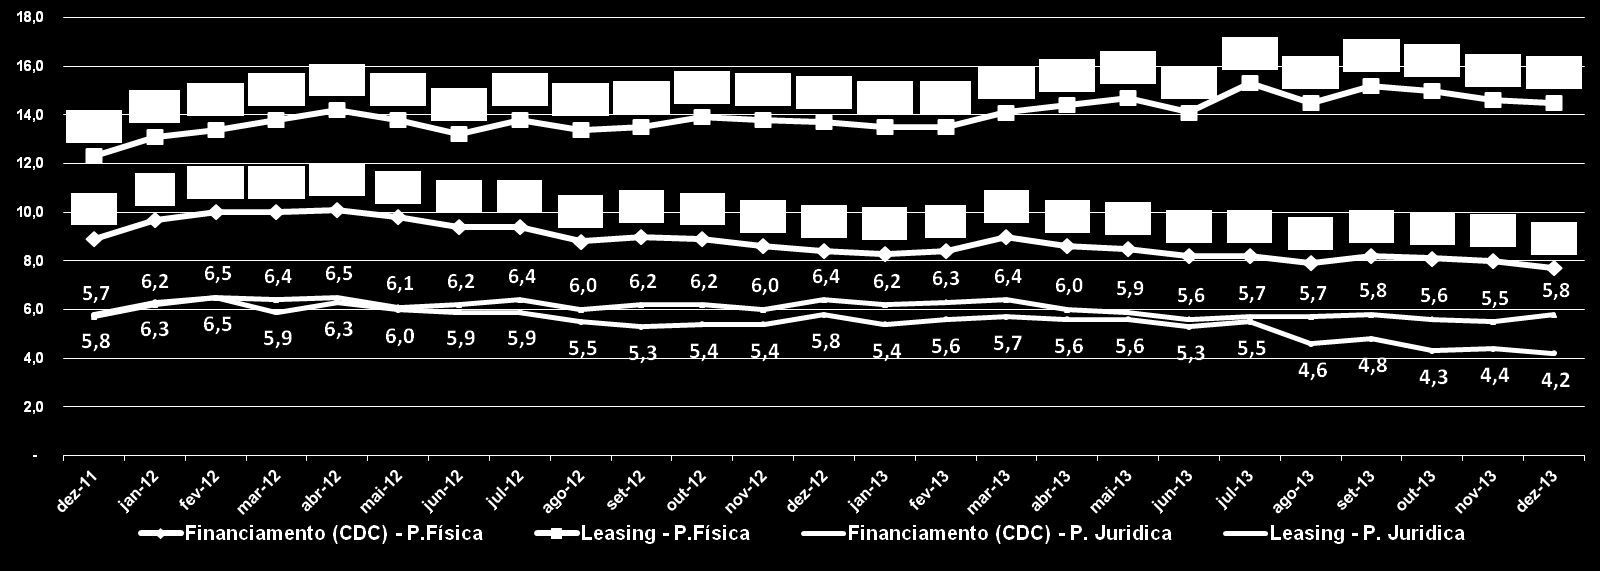 % Atrasos do total da Carteira - Financiamentos (CDC) - P. Fisica = 7,7% ( -0,3 p.p. mês; -0,7 p.p. no ano) % Atrasos do total da Carteira - LEASING - P.Física = 14,5% ( -0,1 p.p. mês; +0,8 p.p. no ano) % Atrasos do total da Carteira - Financiamentos (CDC) - P.